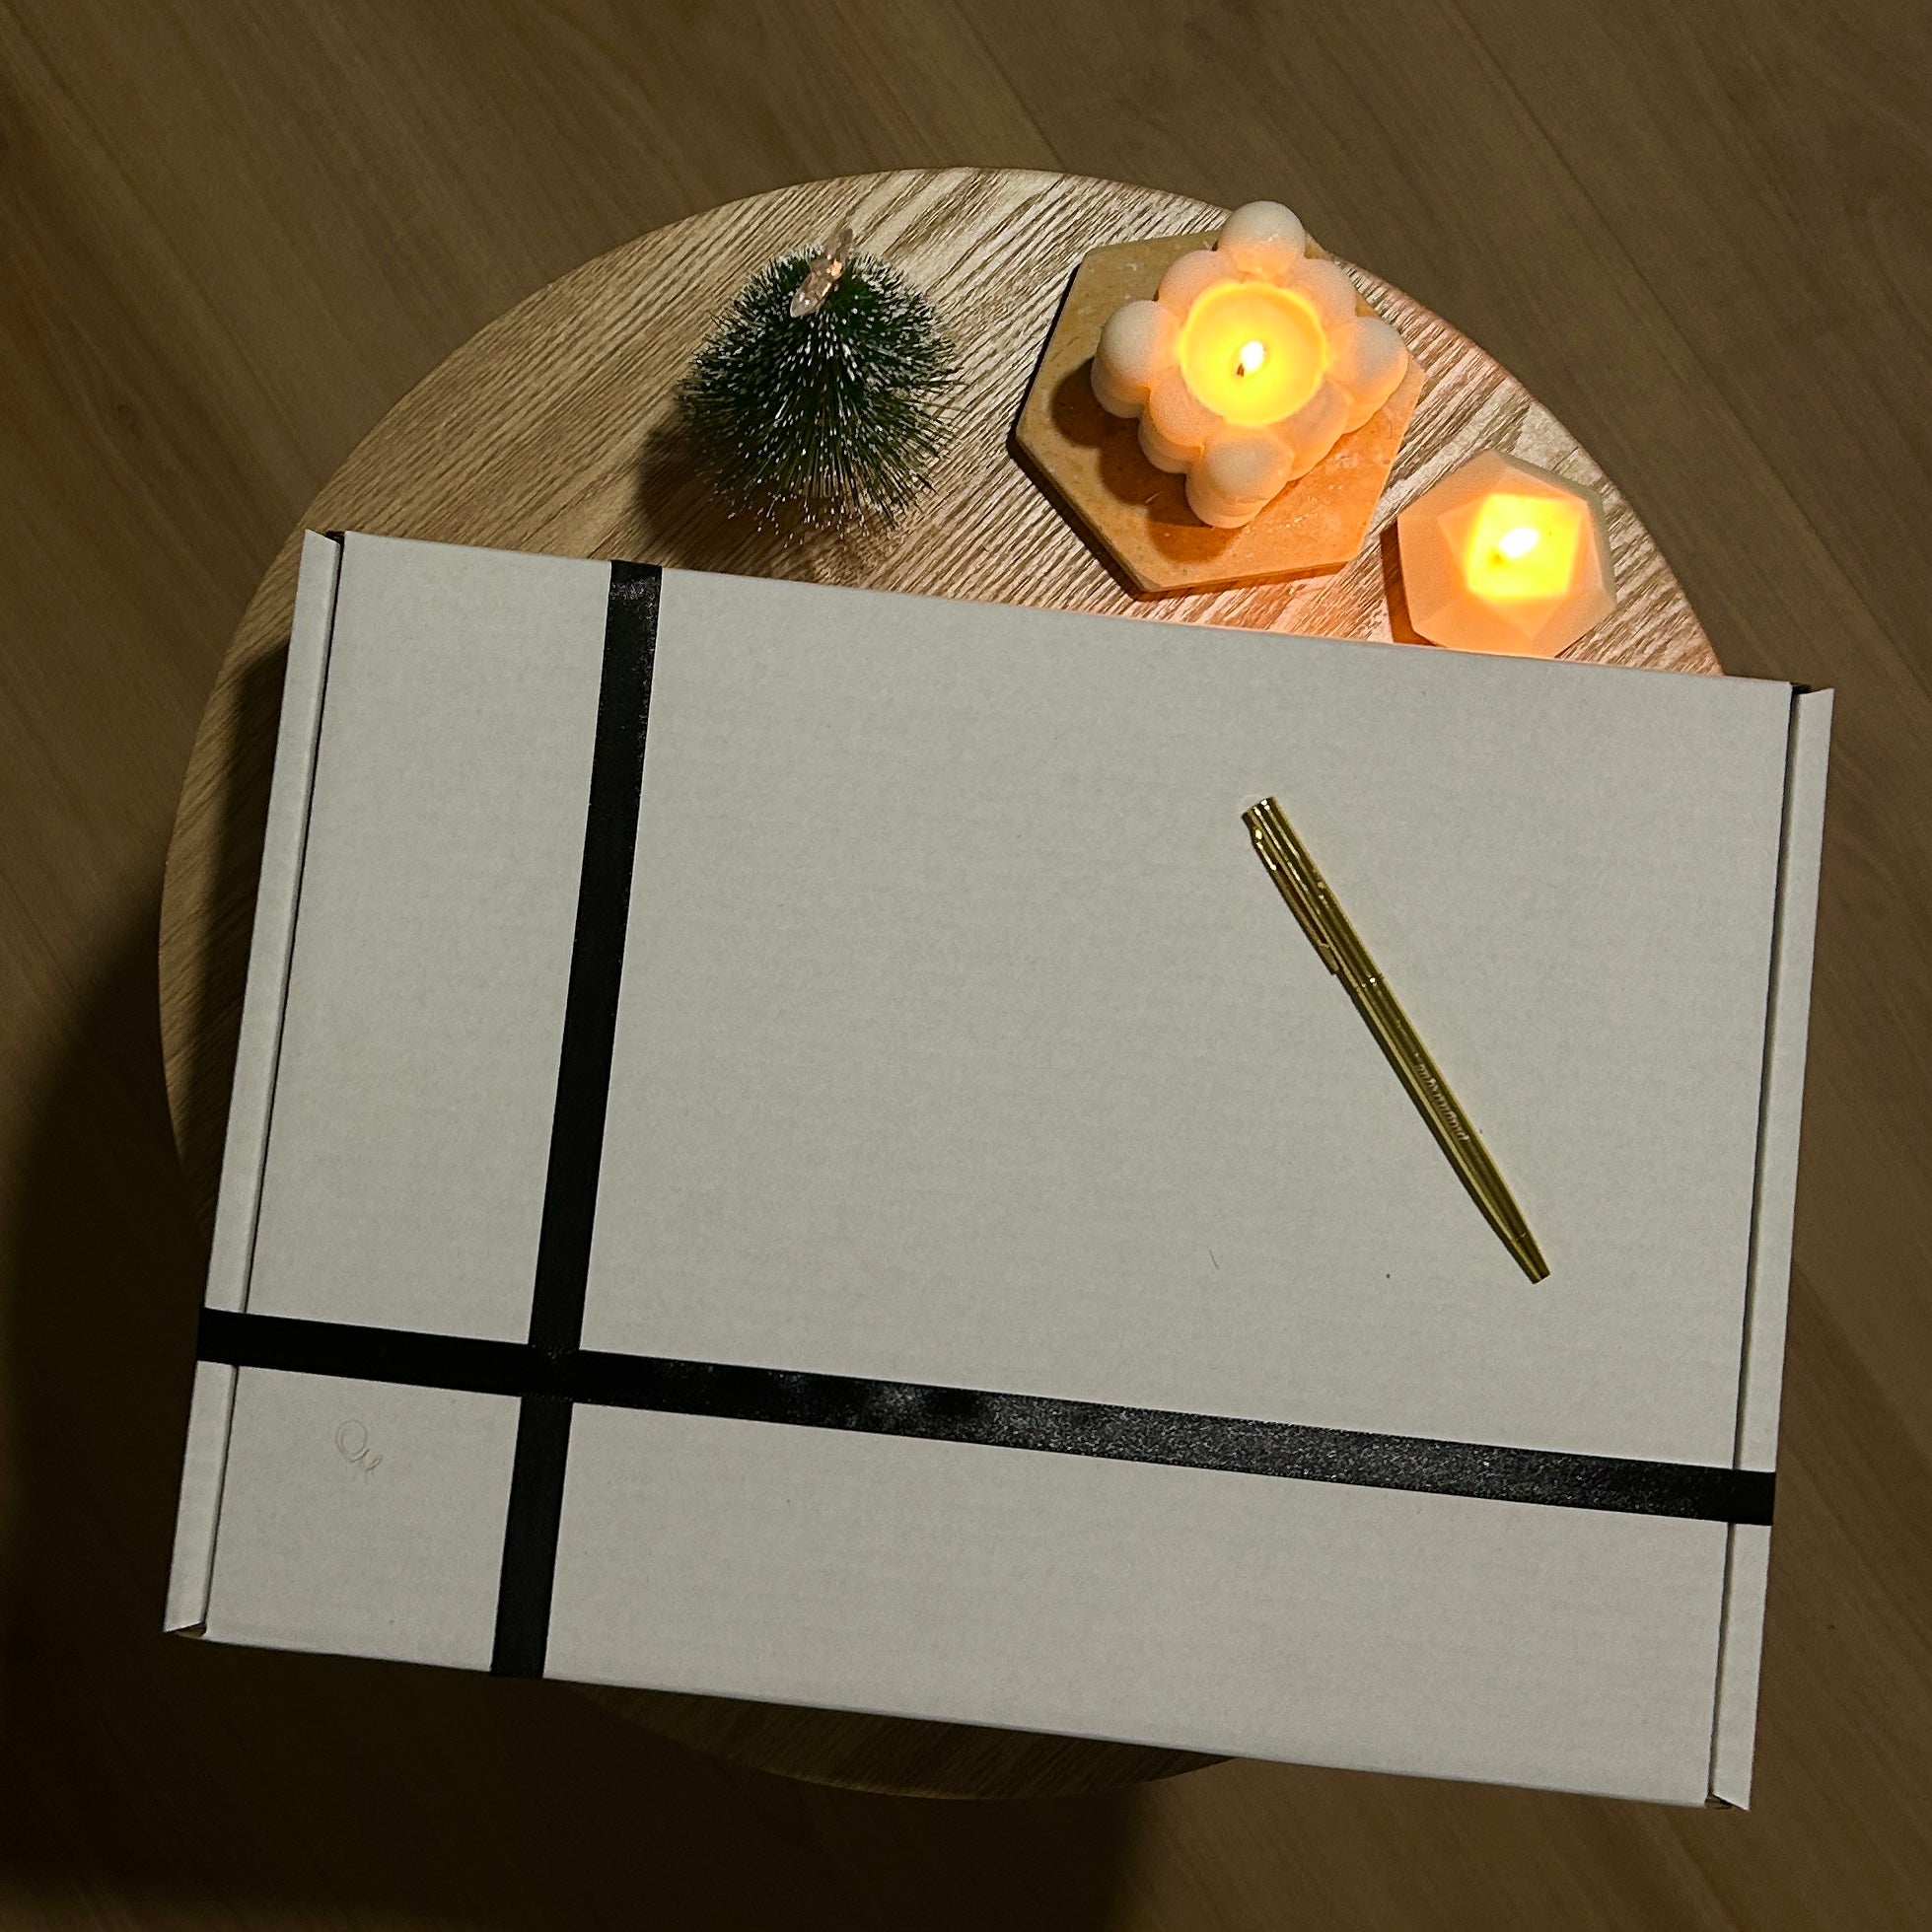 🎄Plagnifique December Gift Box